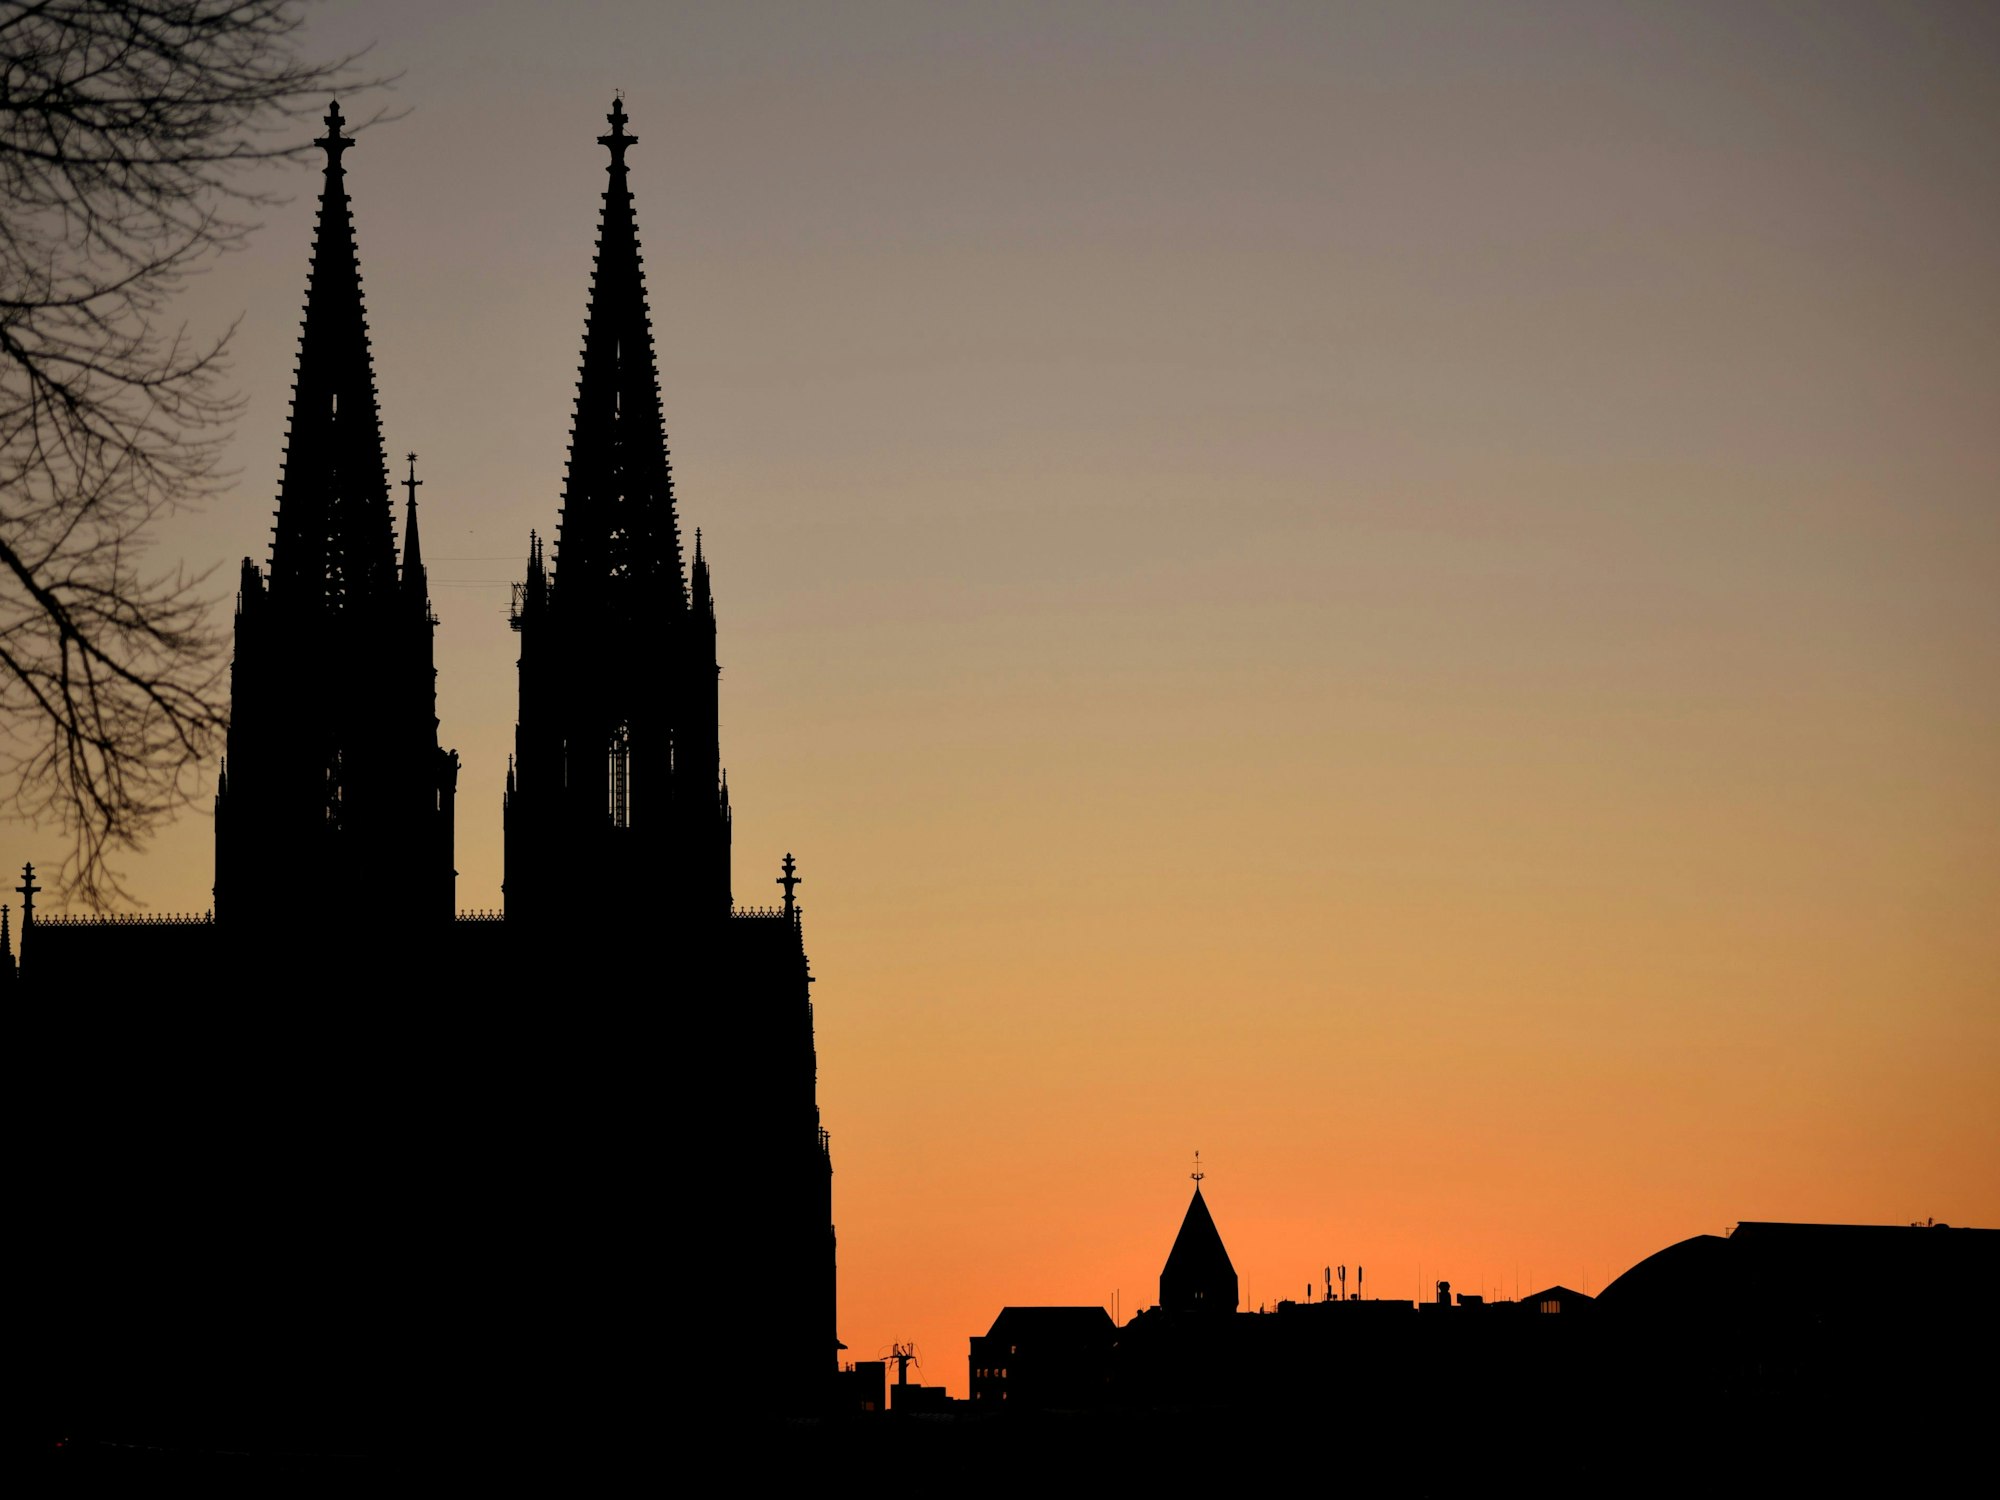 Sonnenuntergang von Deutz aus fotografiert bei wolkenlosem Himmel mit dem Kölner Dom und der Turmspitze von St. Andreas im Hintergrund.